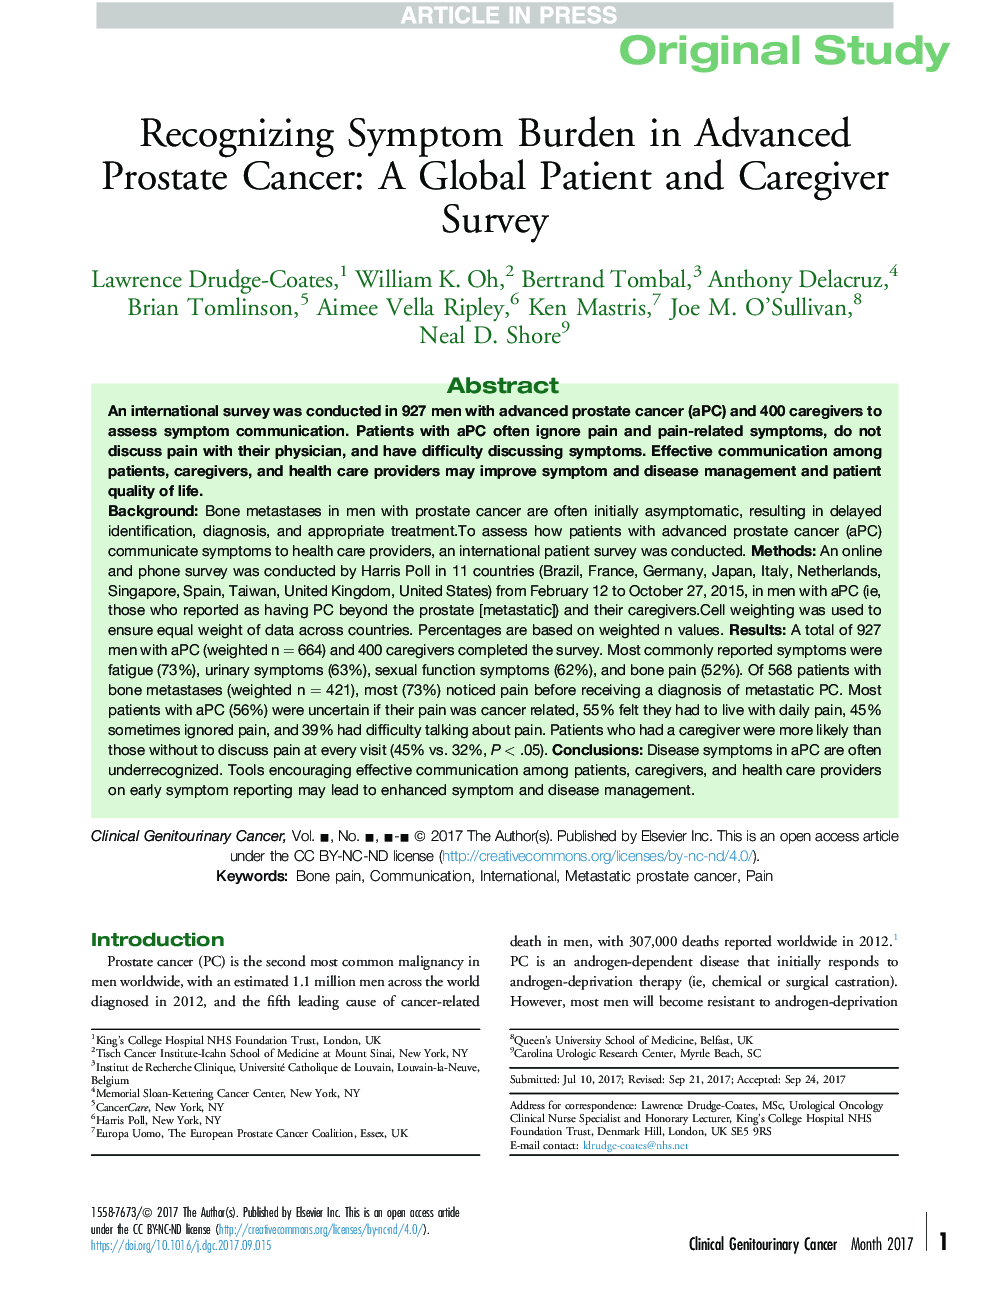 شناخت علائم بروز سرطان پروستات پیشرفته: یک بررسی جهانی بیمار و مراقب 